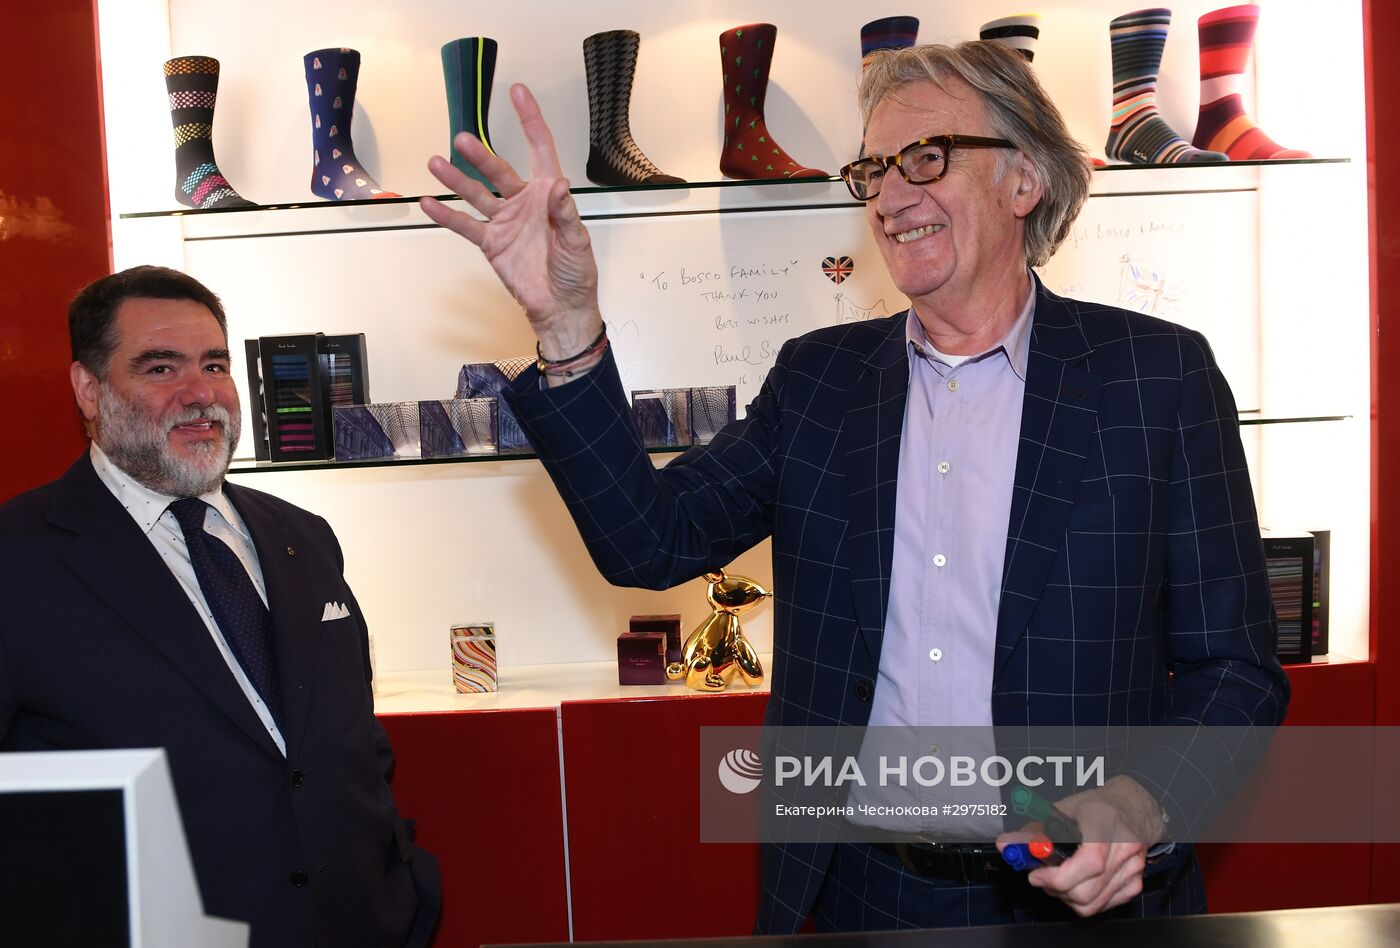 Открытие первого российского представительства марки Paul Smith в ГУМе